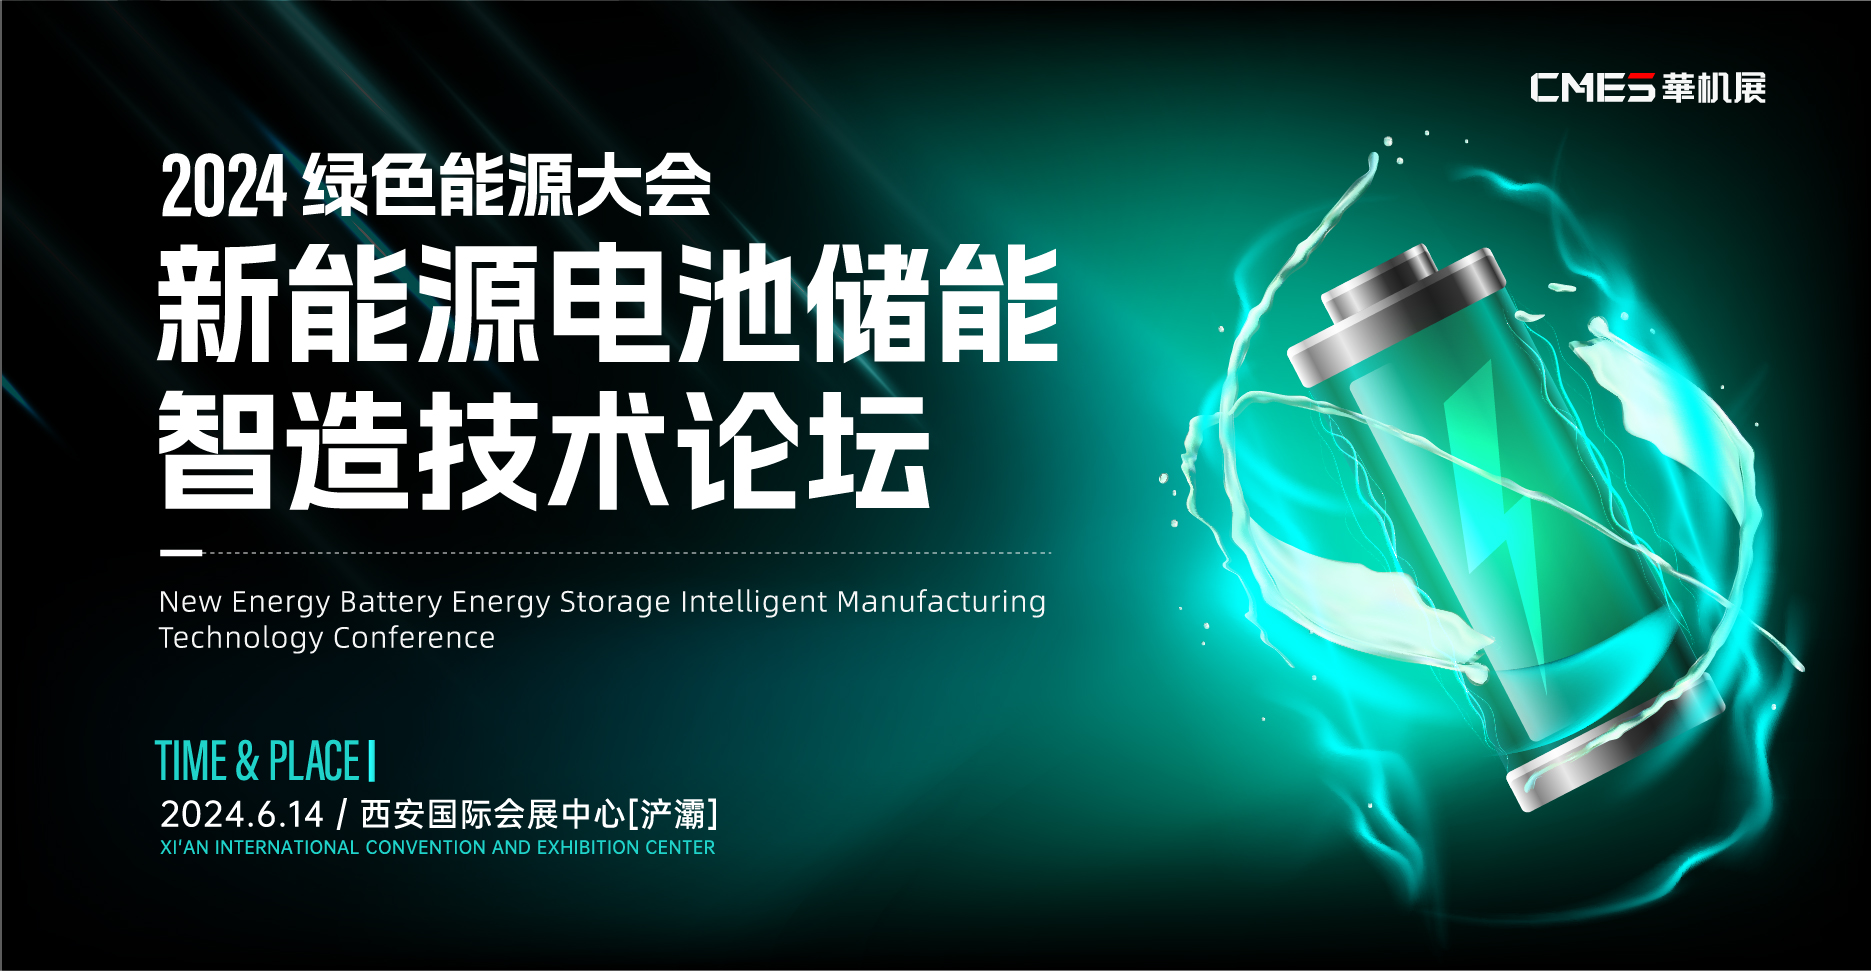  2024绿色能源大会：新能源电池储能智造技术论坛